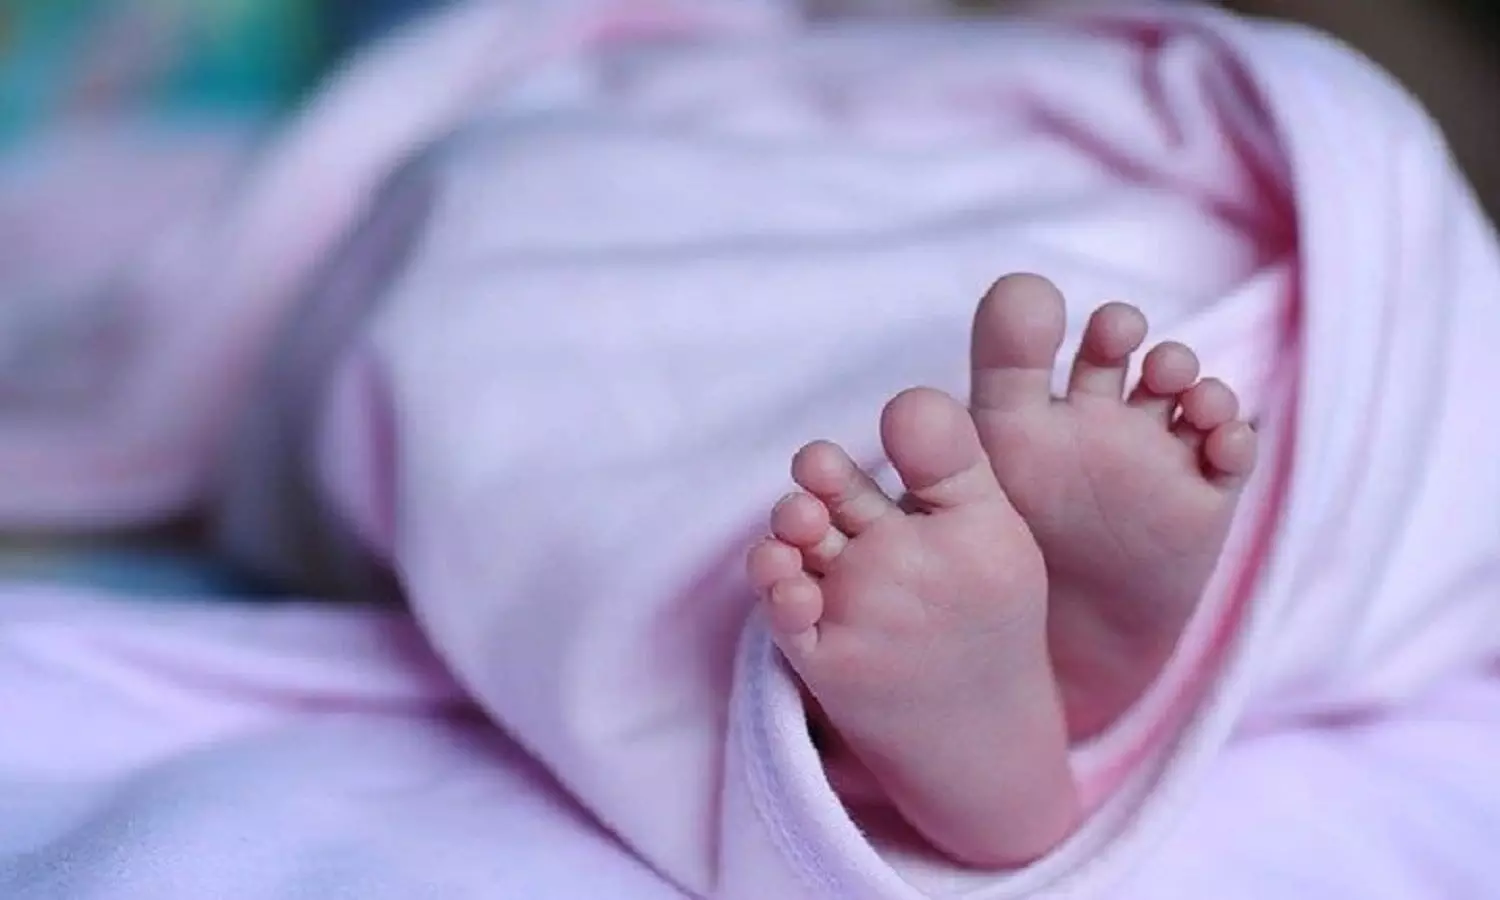 तीन माह का बच्चा पहुंचा दिल्ली हाईकोर्ट, फिर जो हुआ वो आपको जानना चाहिए